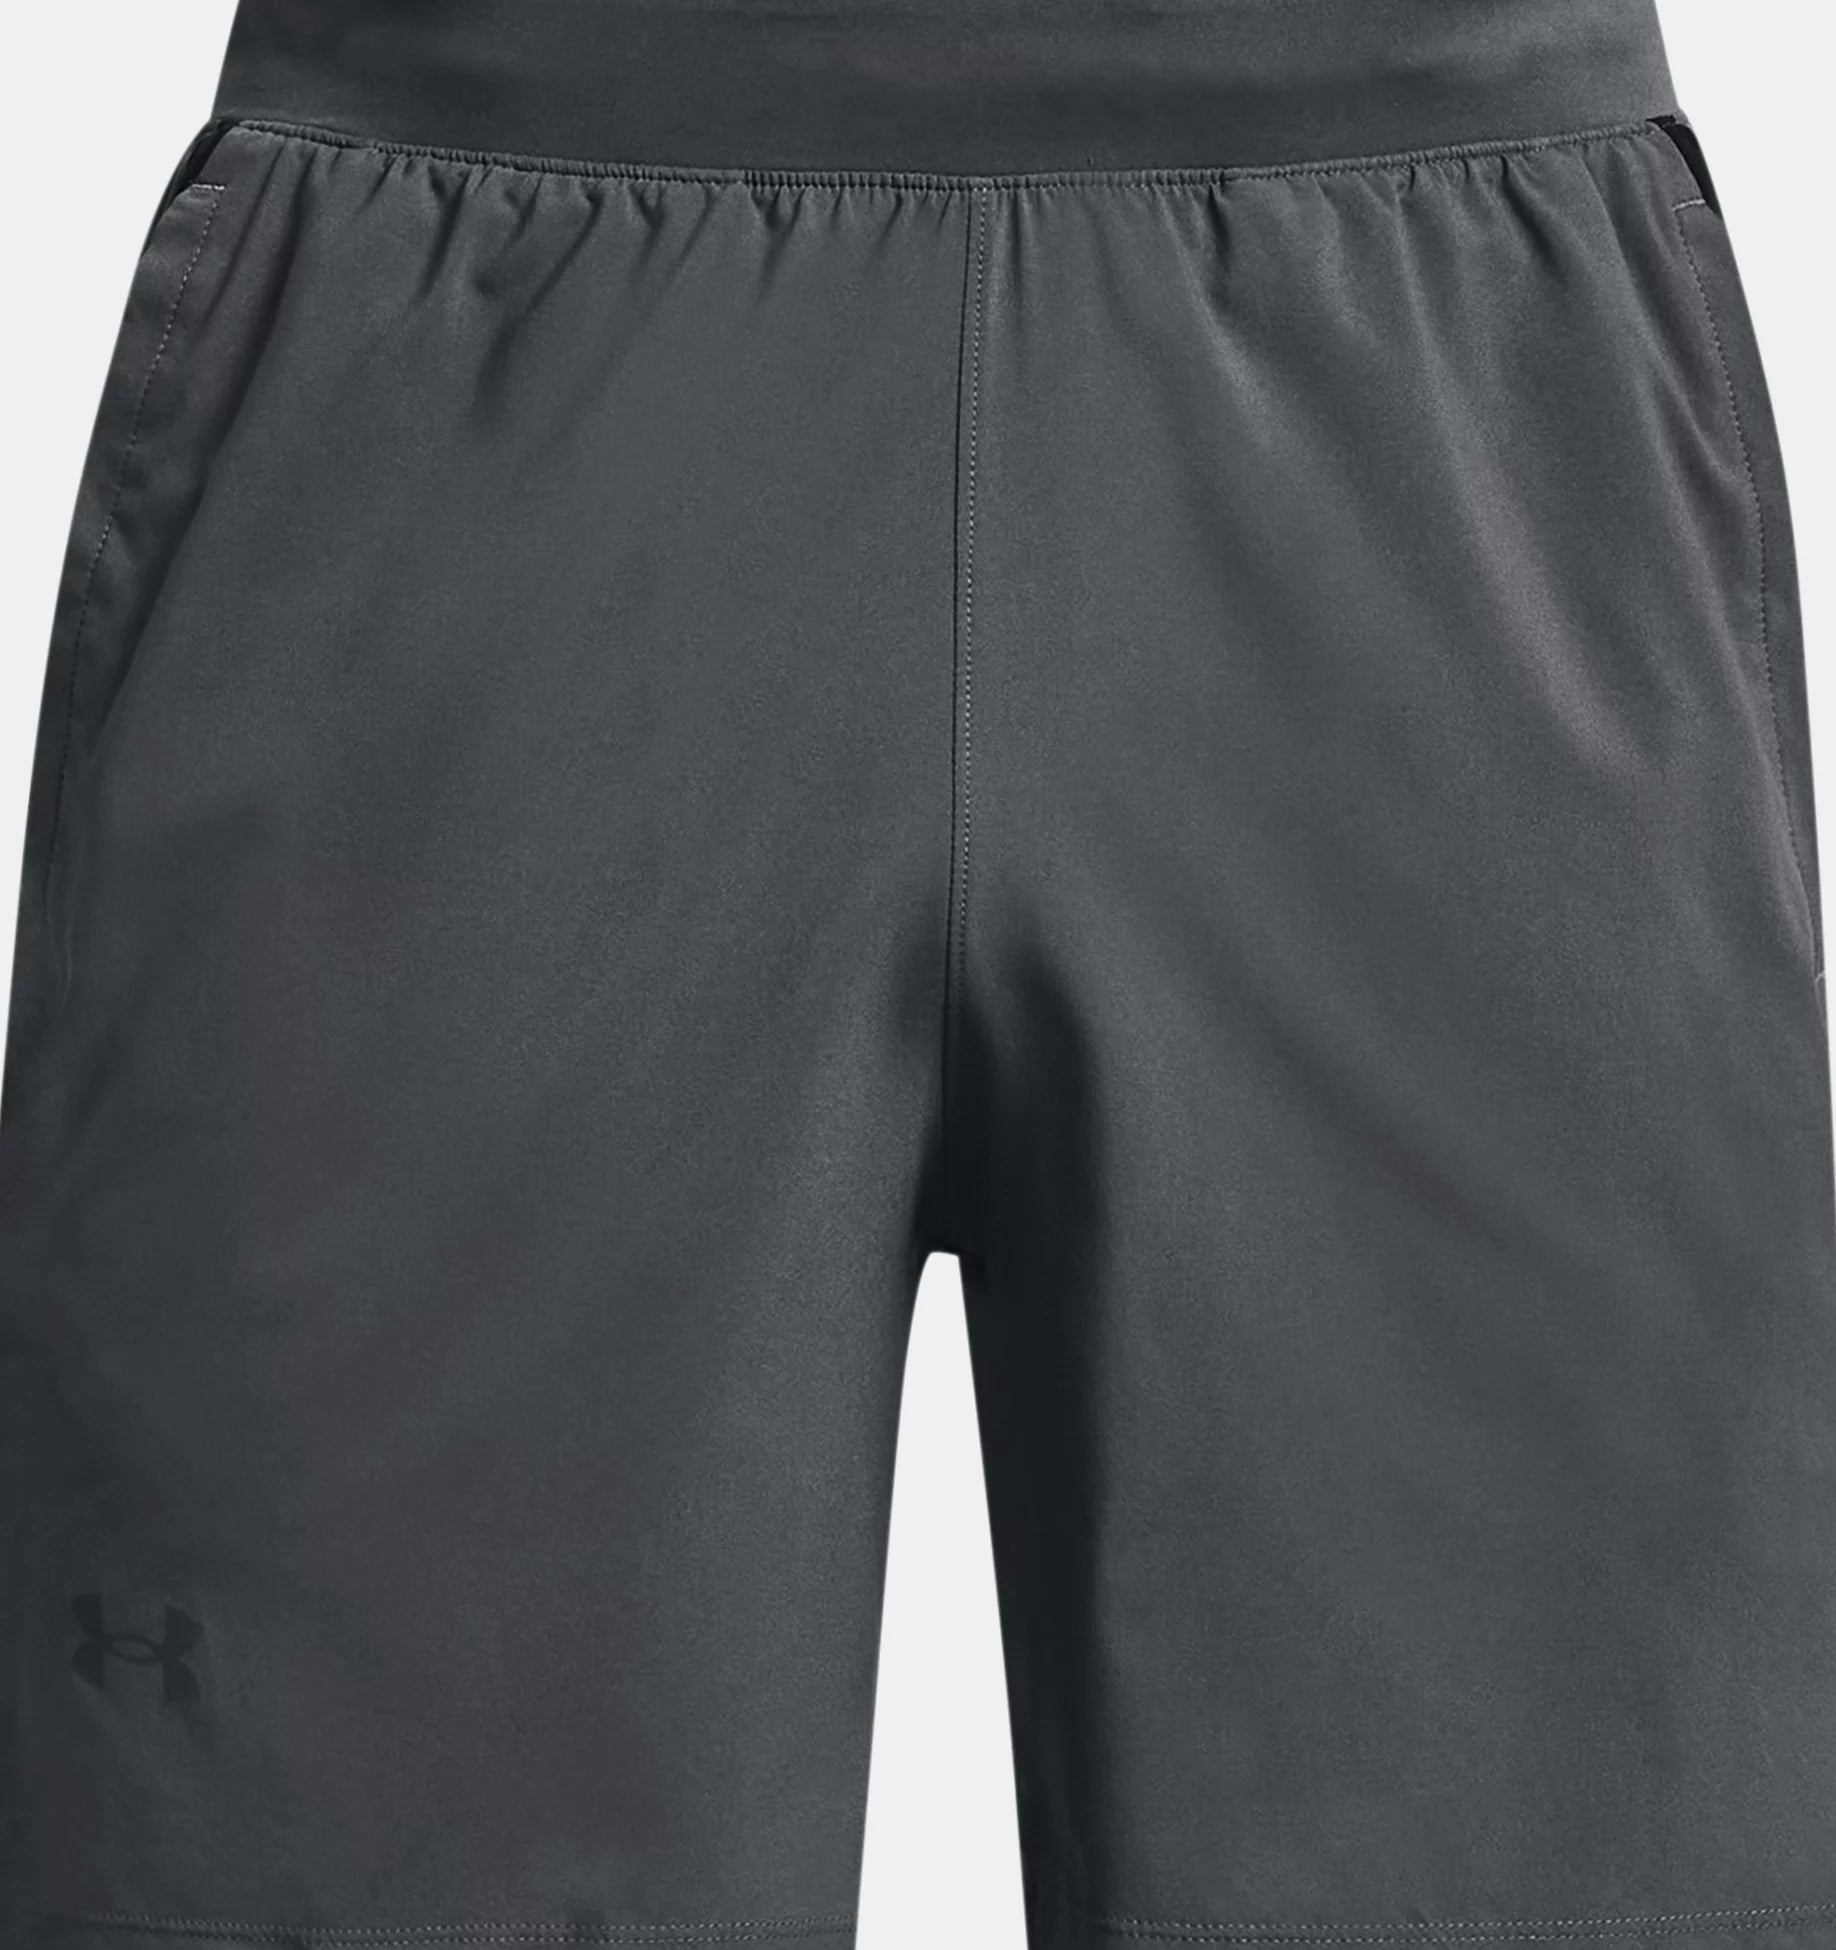 Men's UA Launch Run 7" Shorts - grey